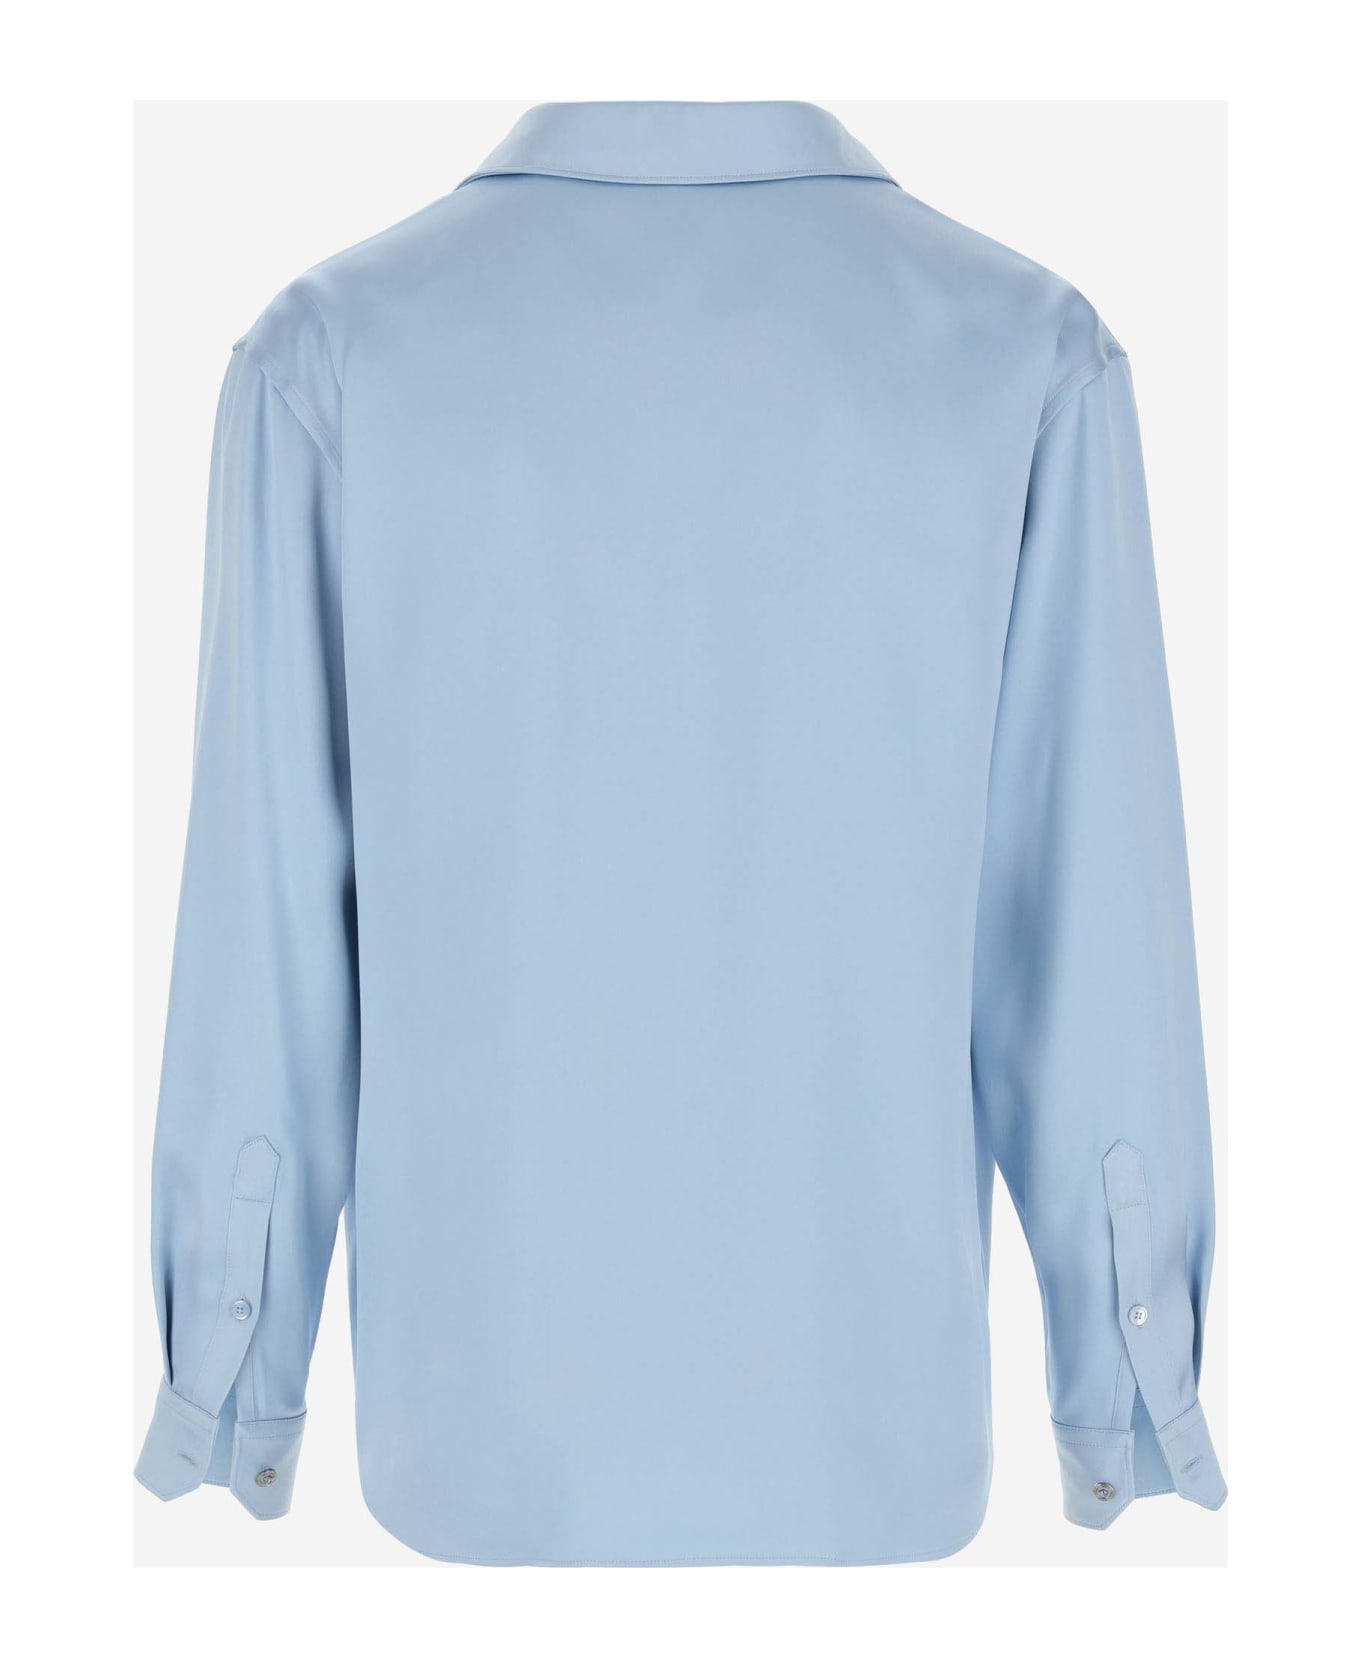 Versace Viscose Blend Shirt - Clear Blue ニットウェア